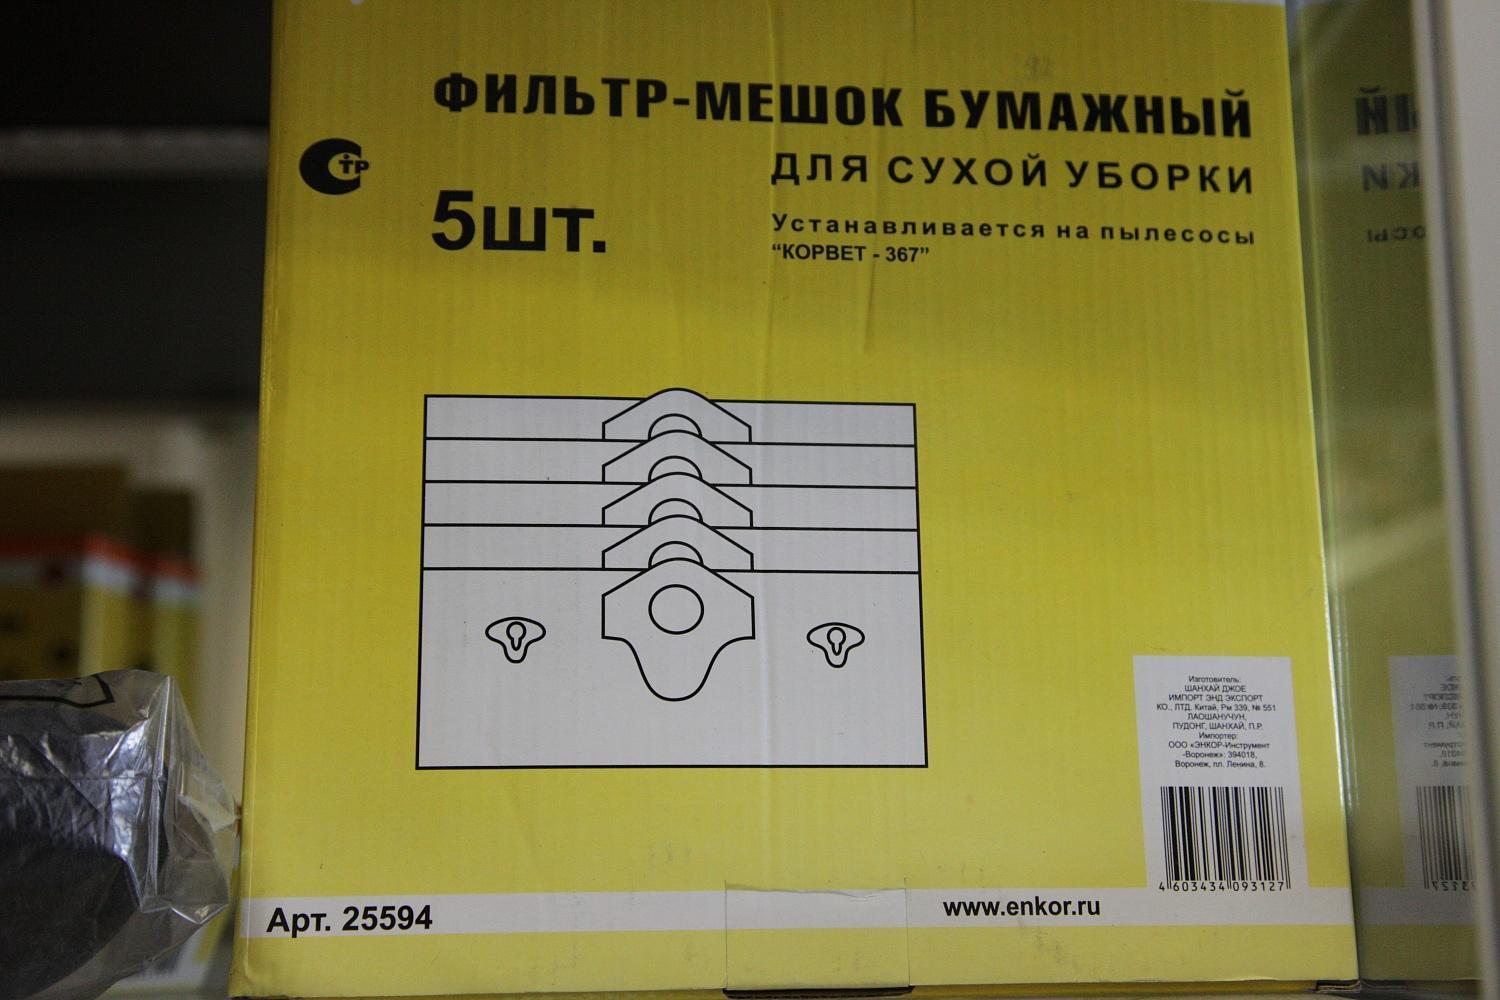 Фильтр-мешок бумажный Энкор 5 шт для пылесоса Корвет 367